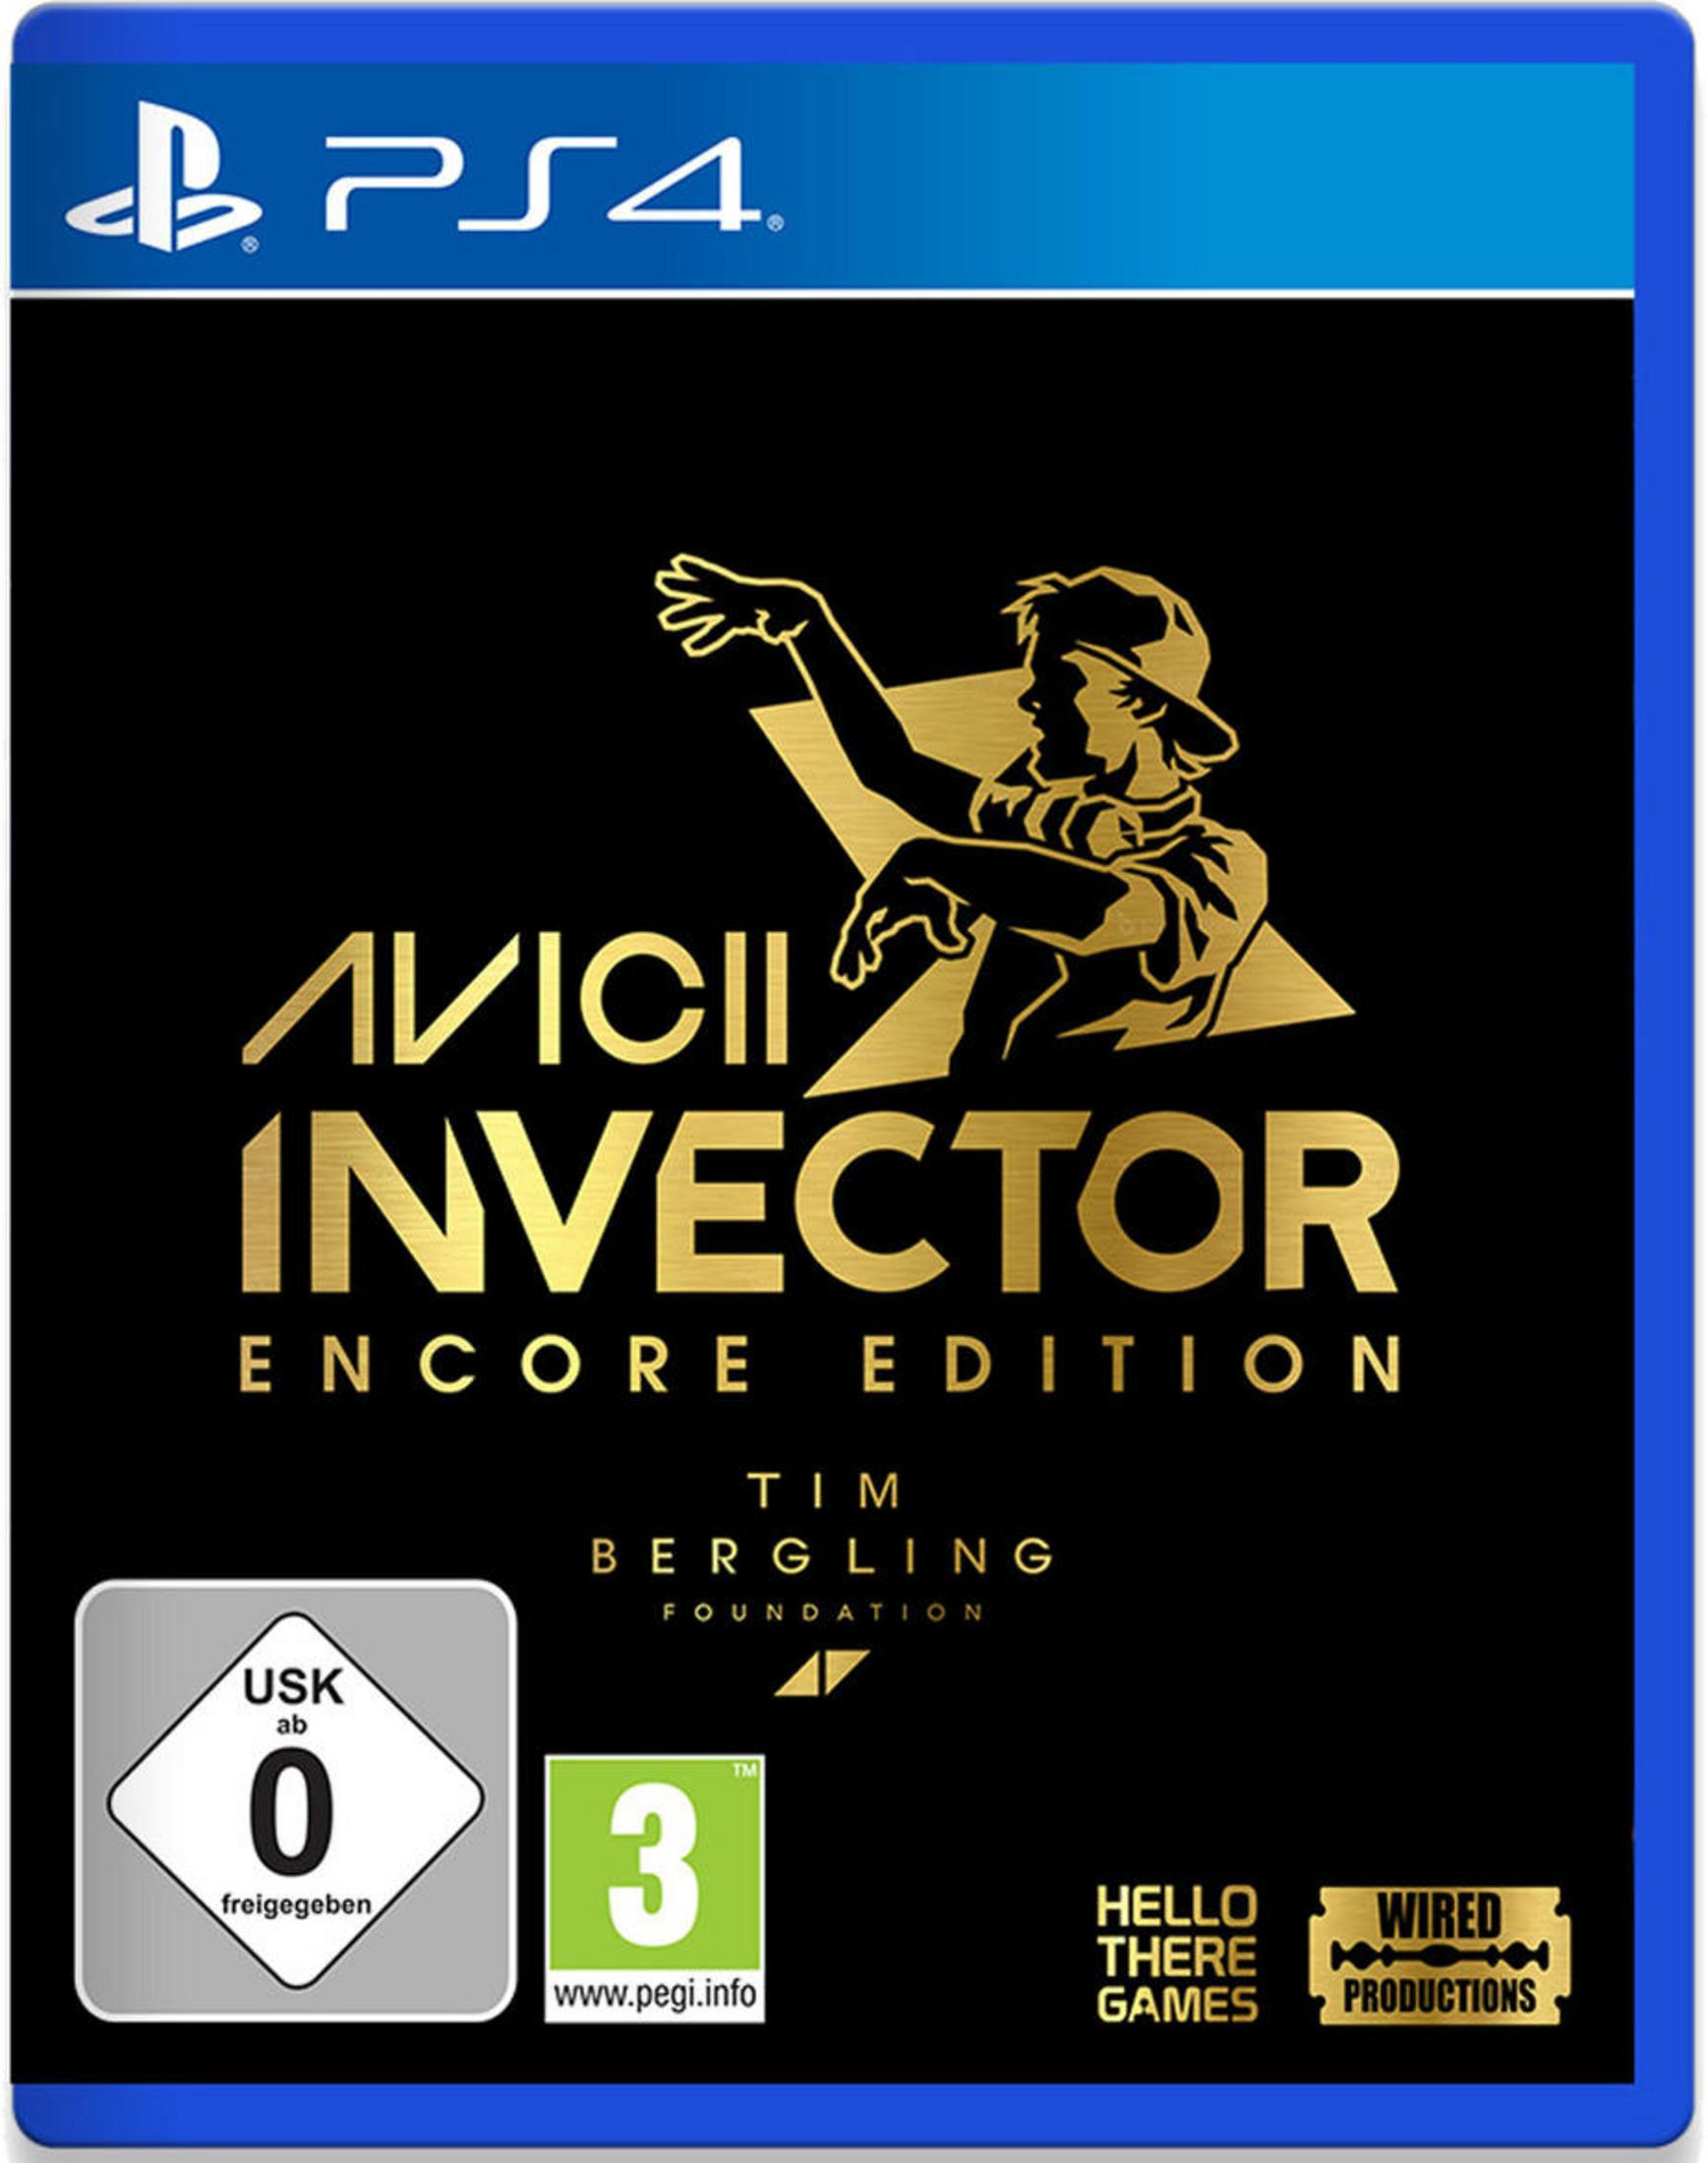 Invector Encore 4] Edition - AVICII [PlayStation